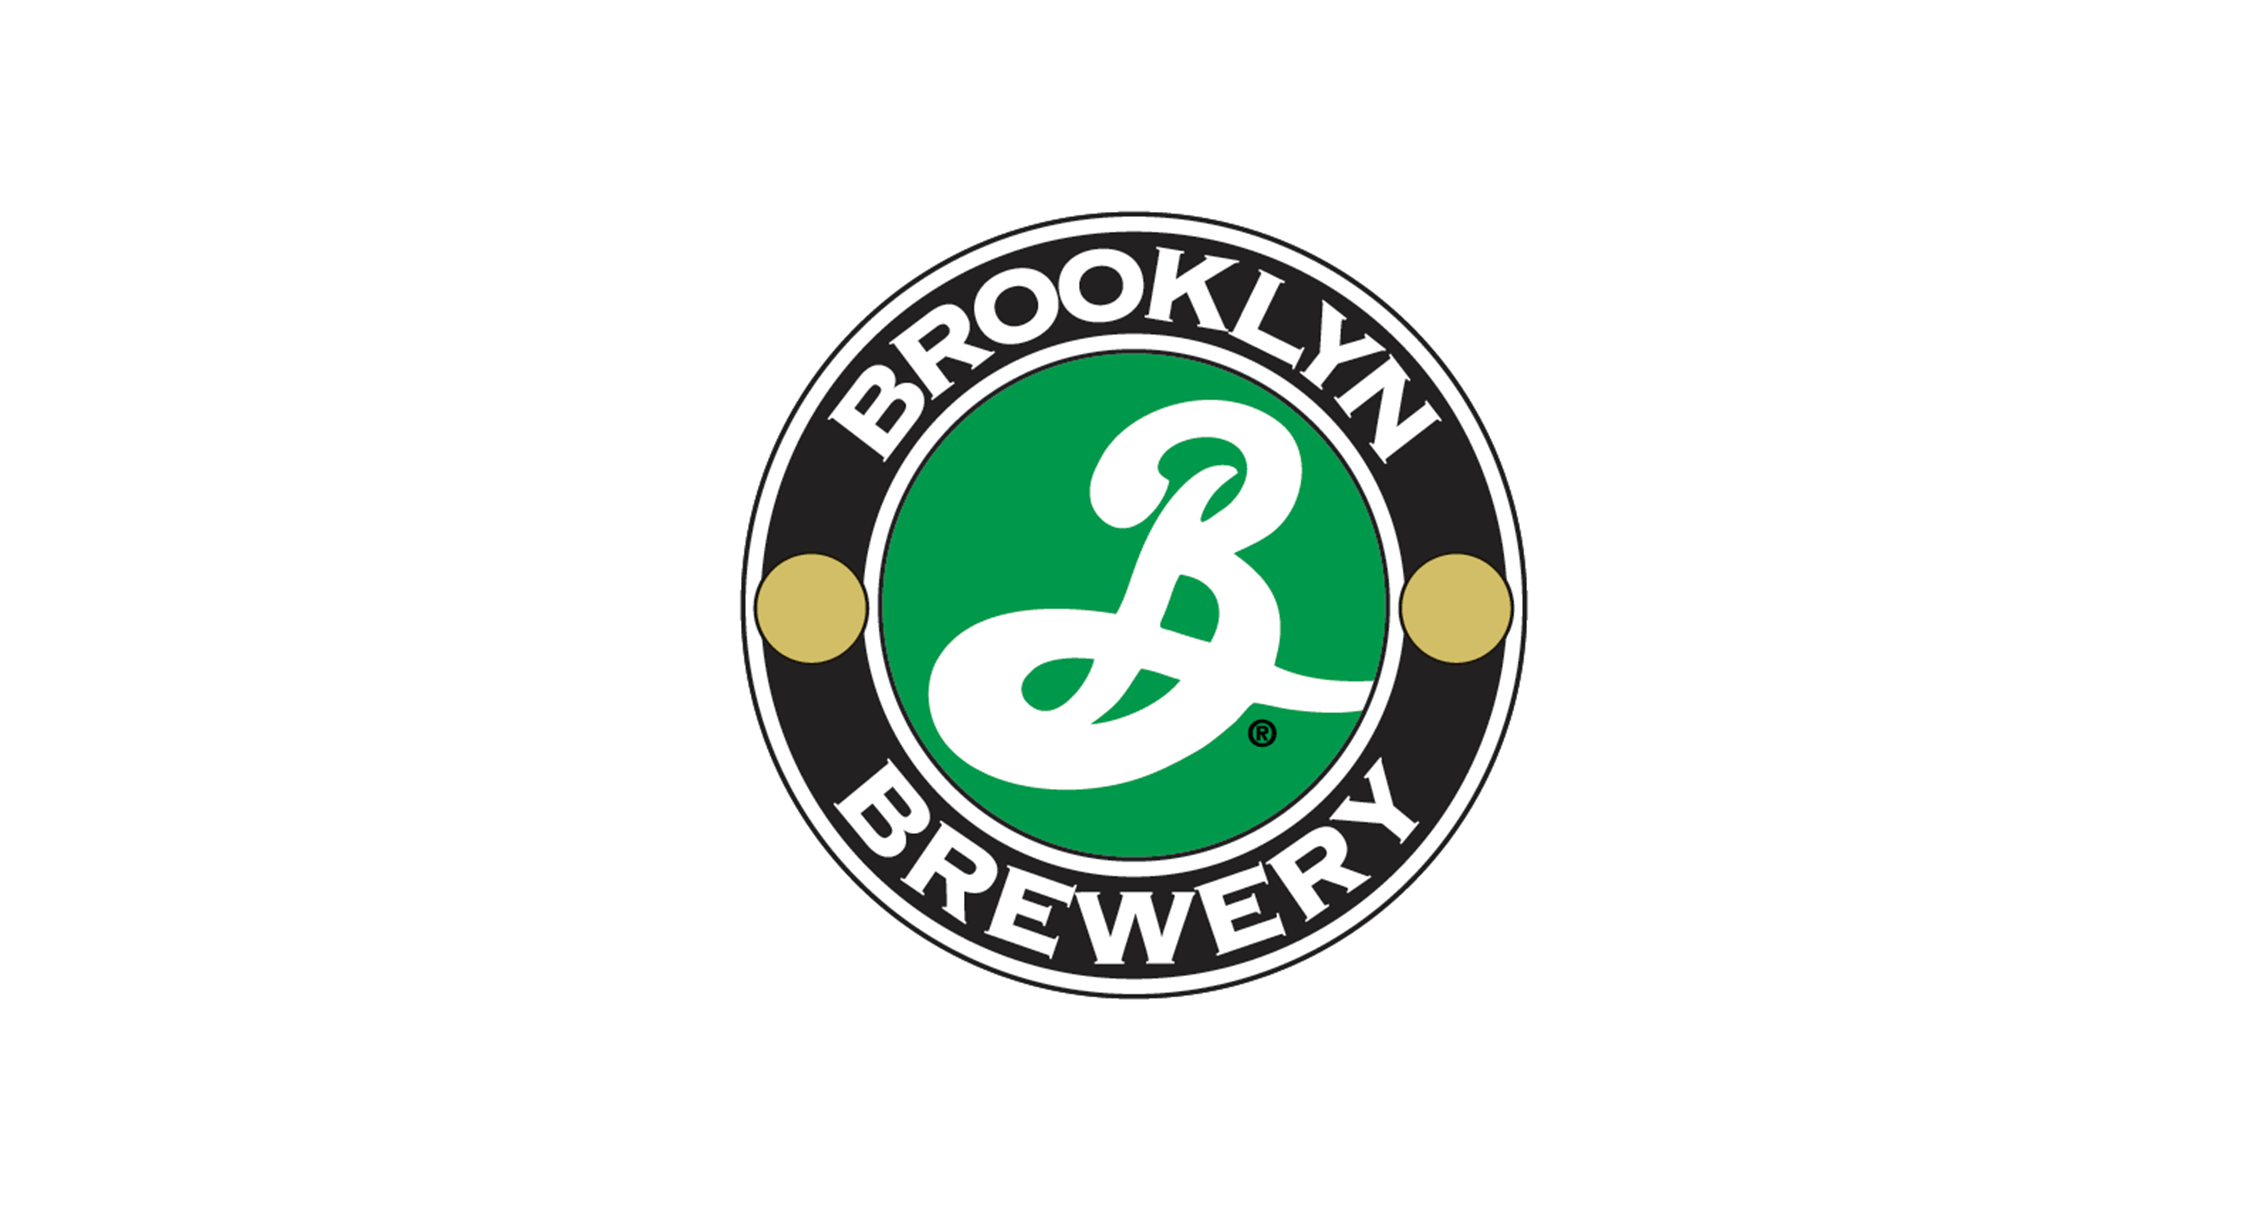 布鲁克林精酿啤酒 Brooklyn Brewery